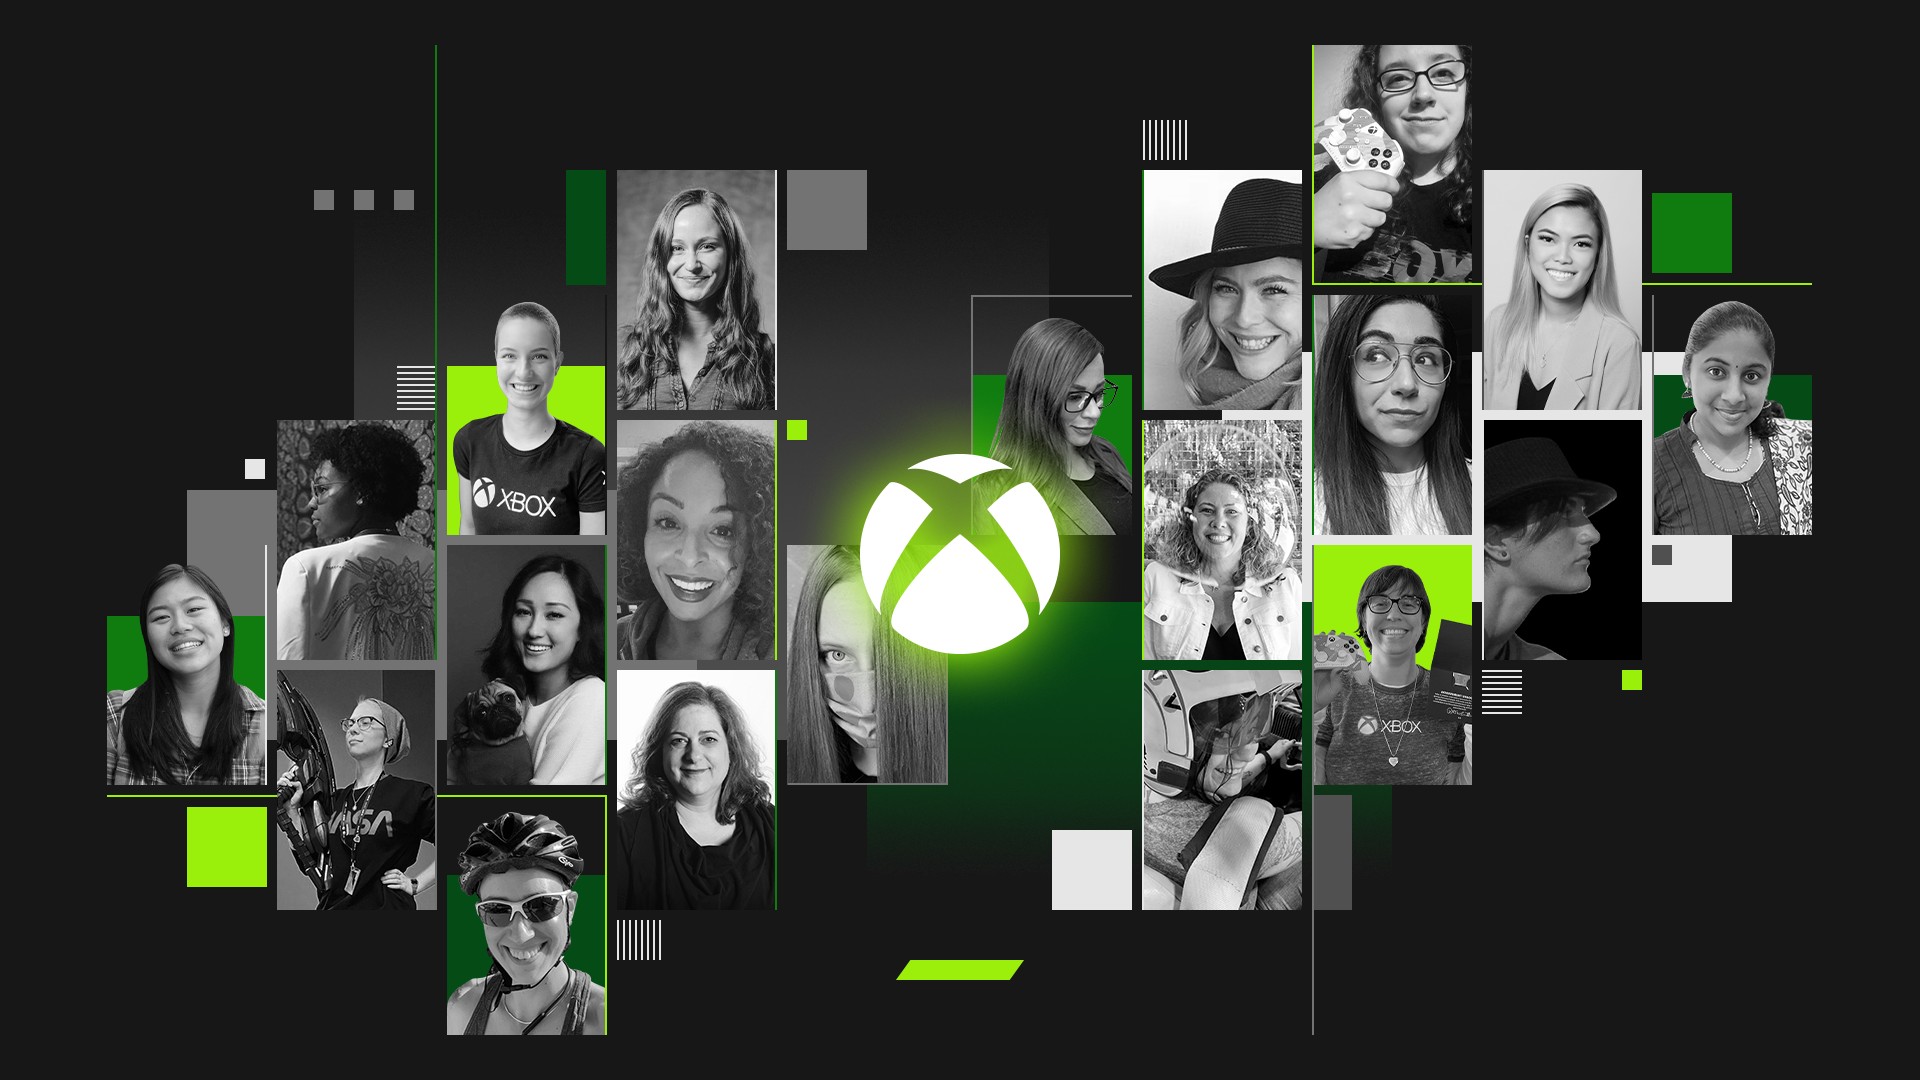 Xbox feiert den Internationalen Frauentag HERO